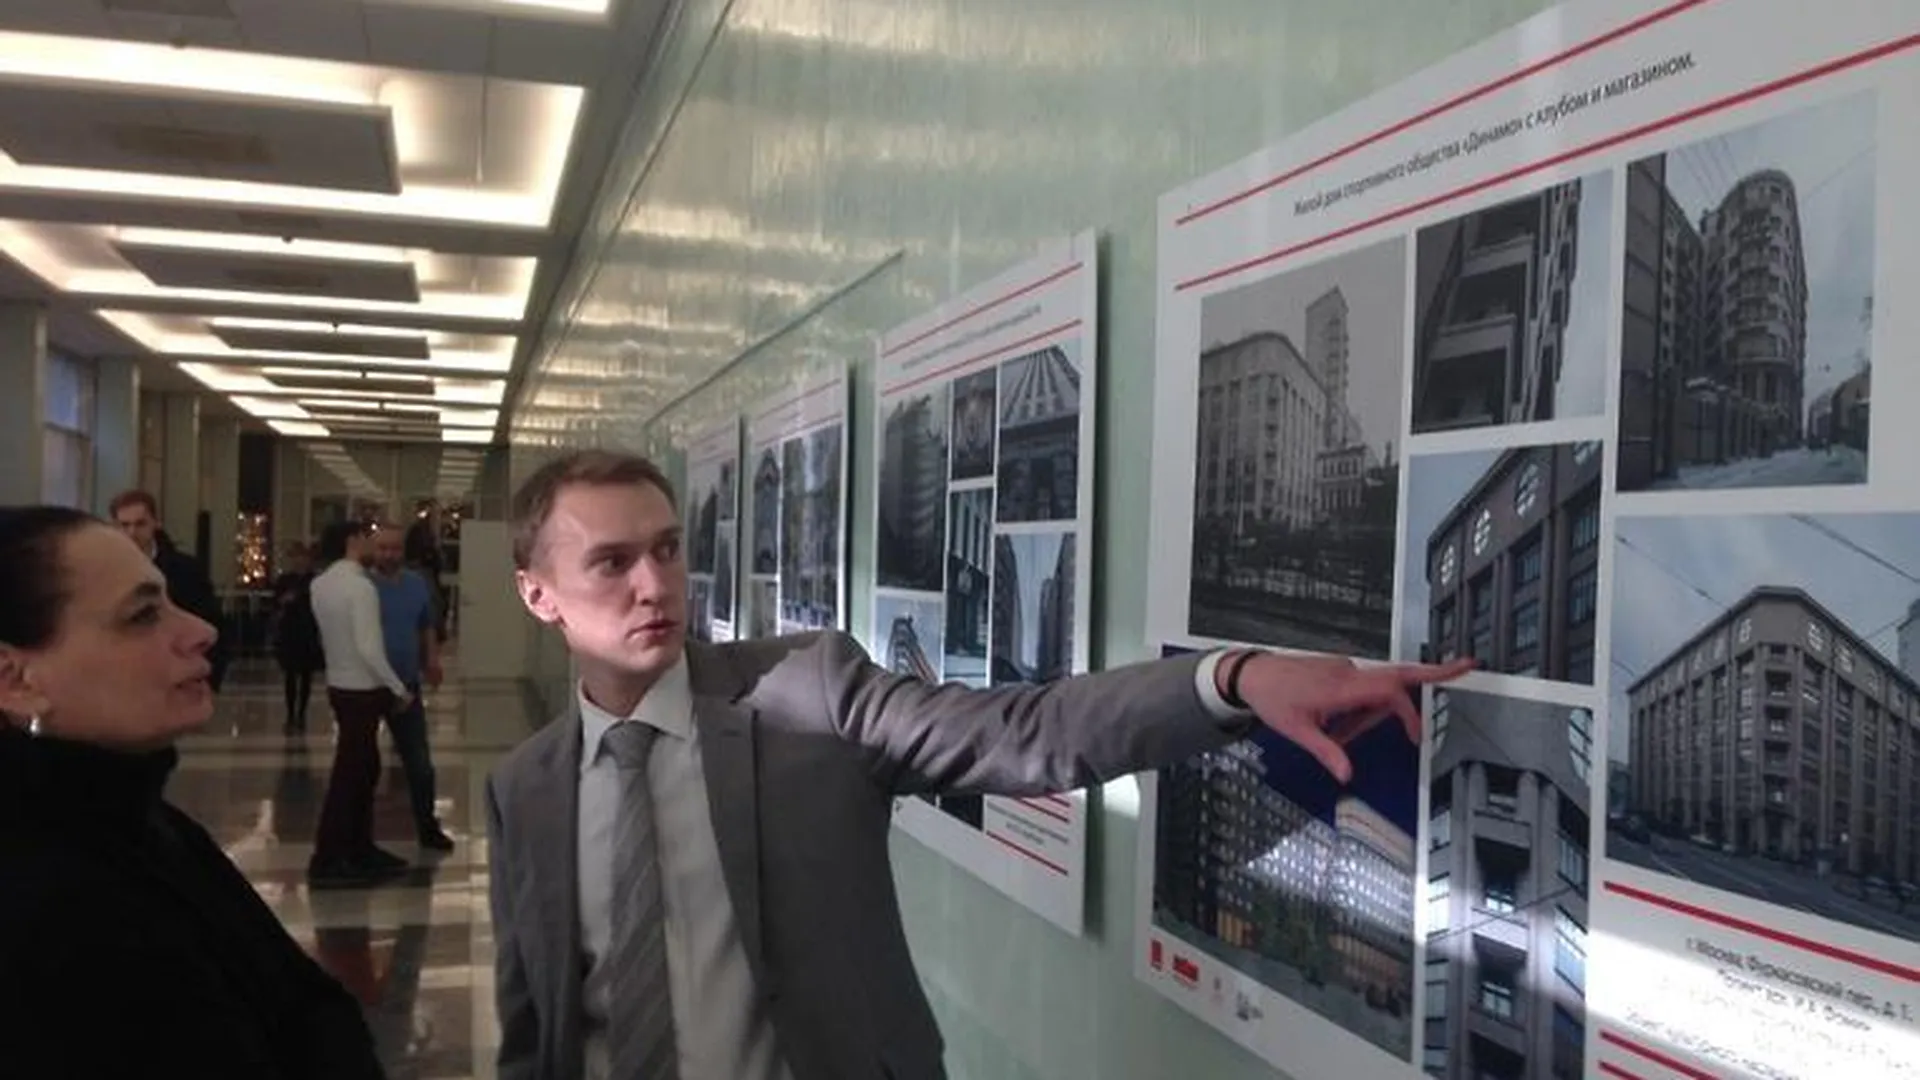 Историк из Королева организовал выставку в Госдуме РФ в честь архитектора Лангмана